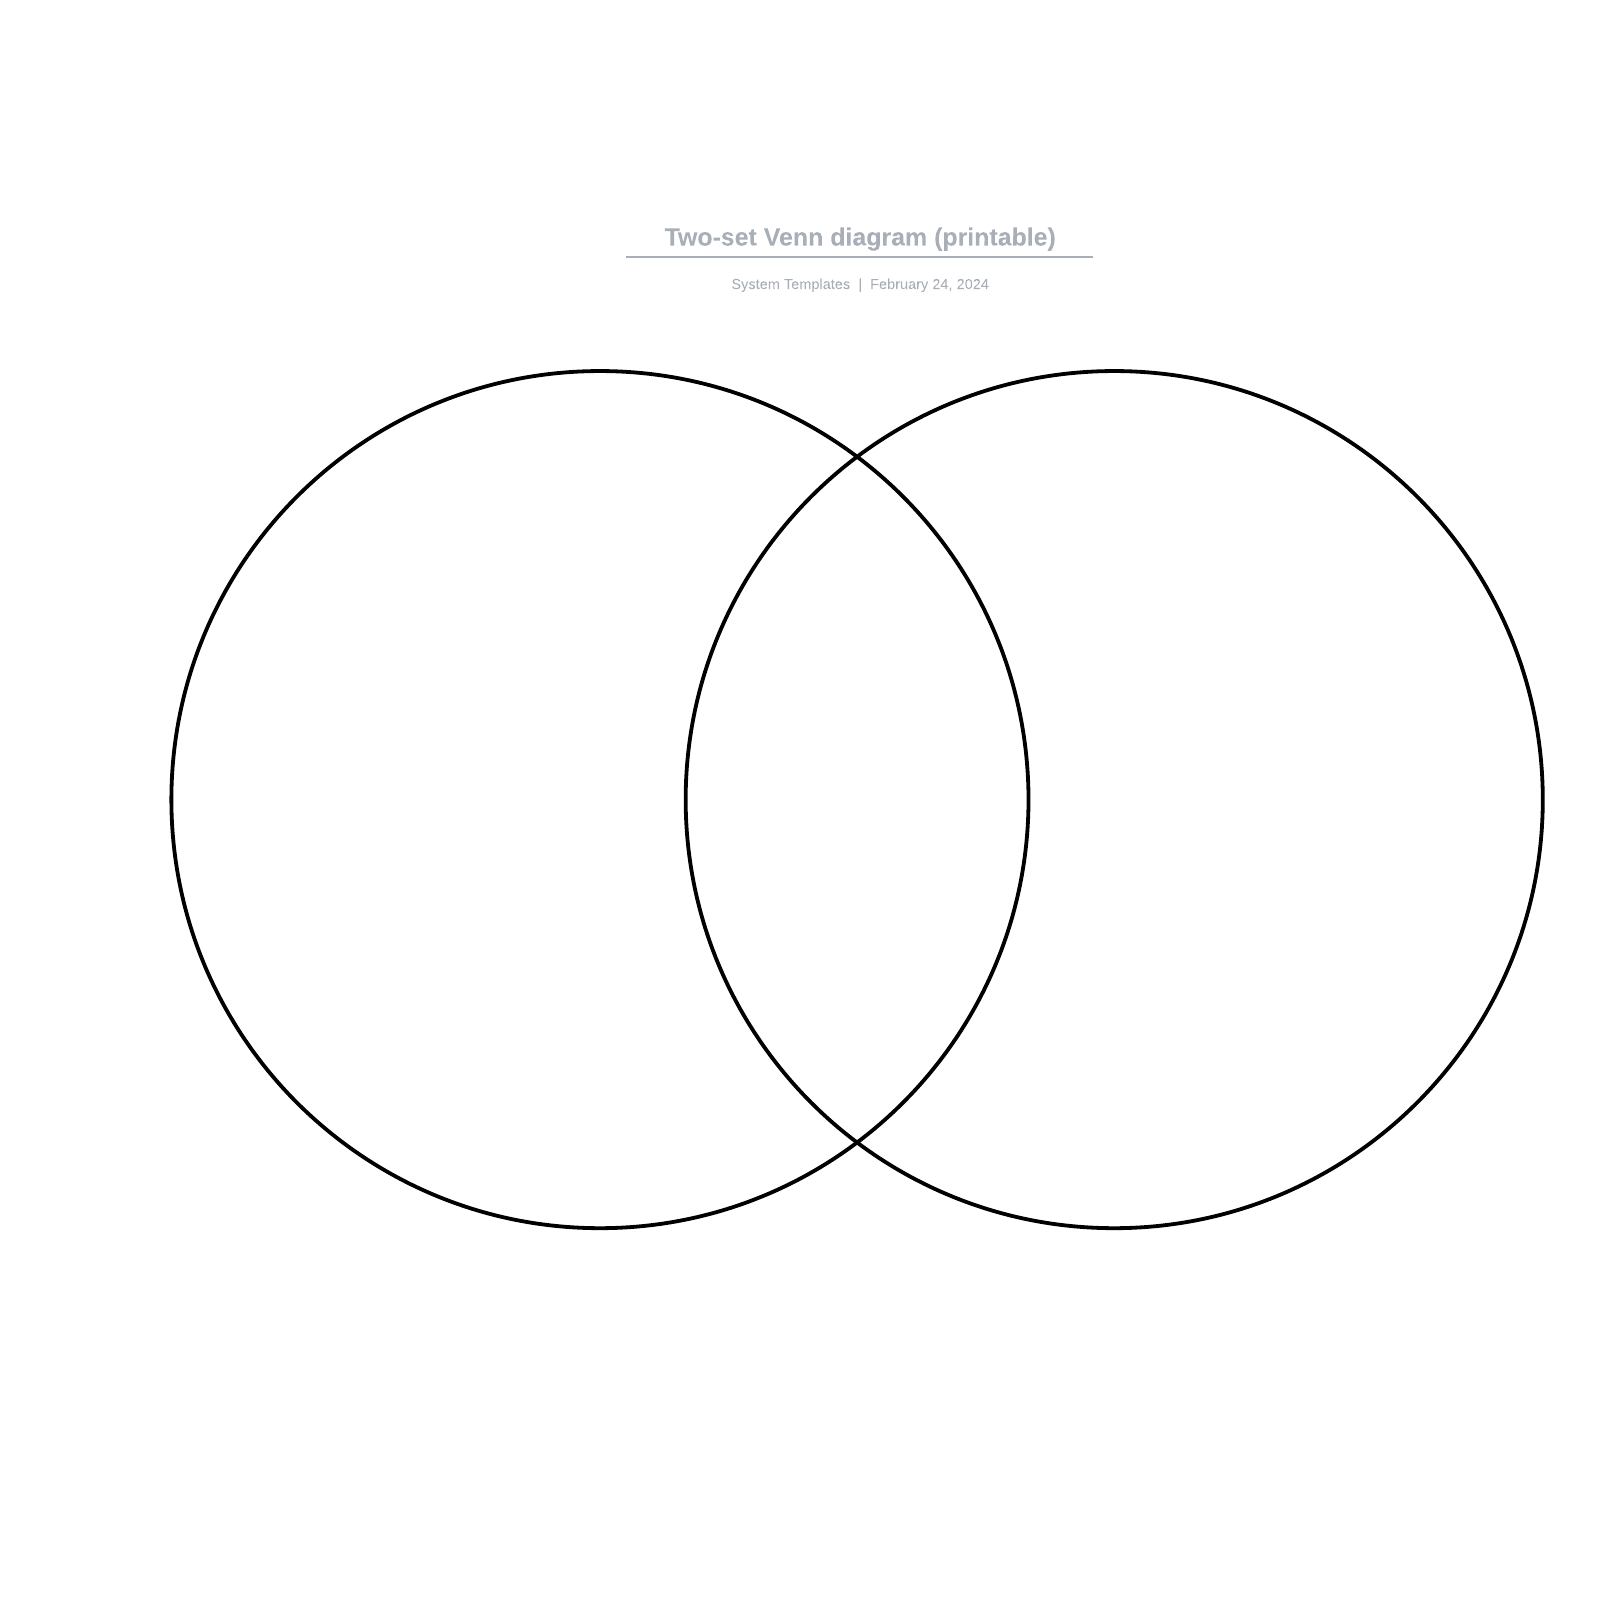 Two-set Venn diagram (printable) example